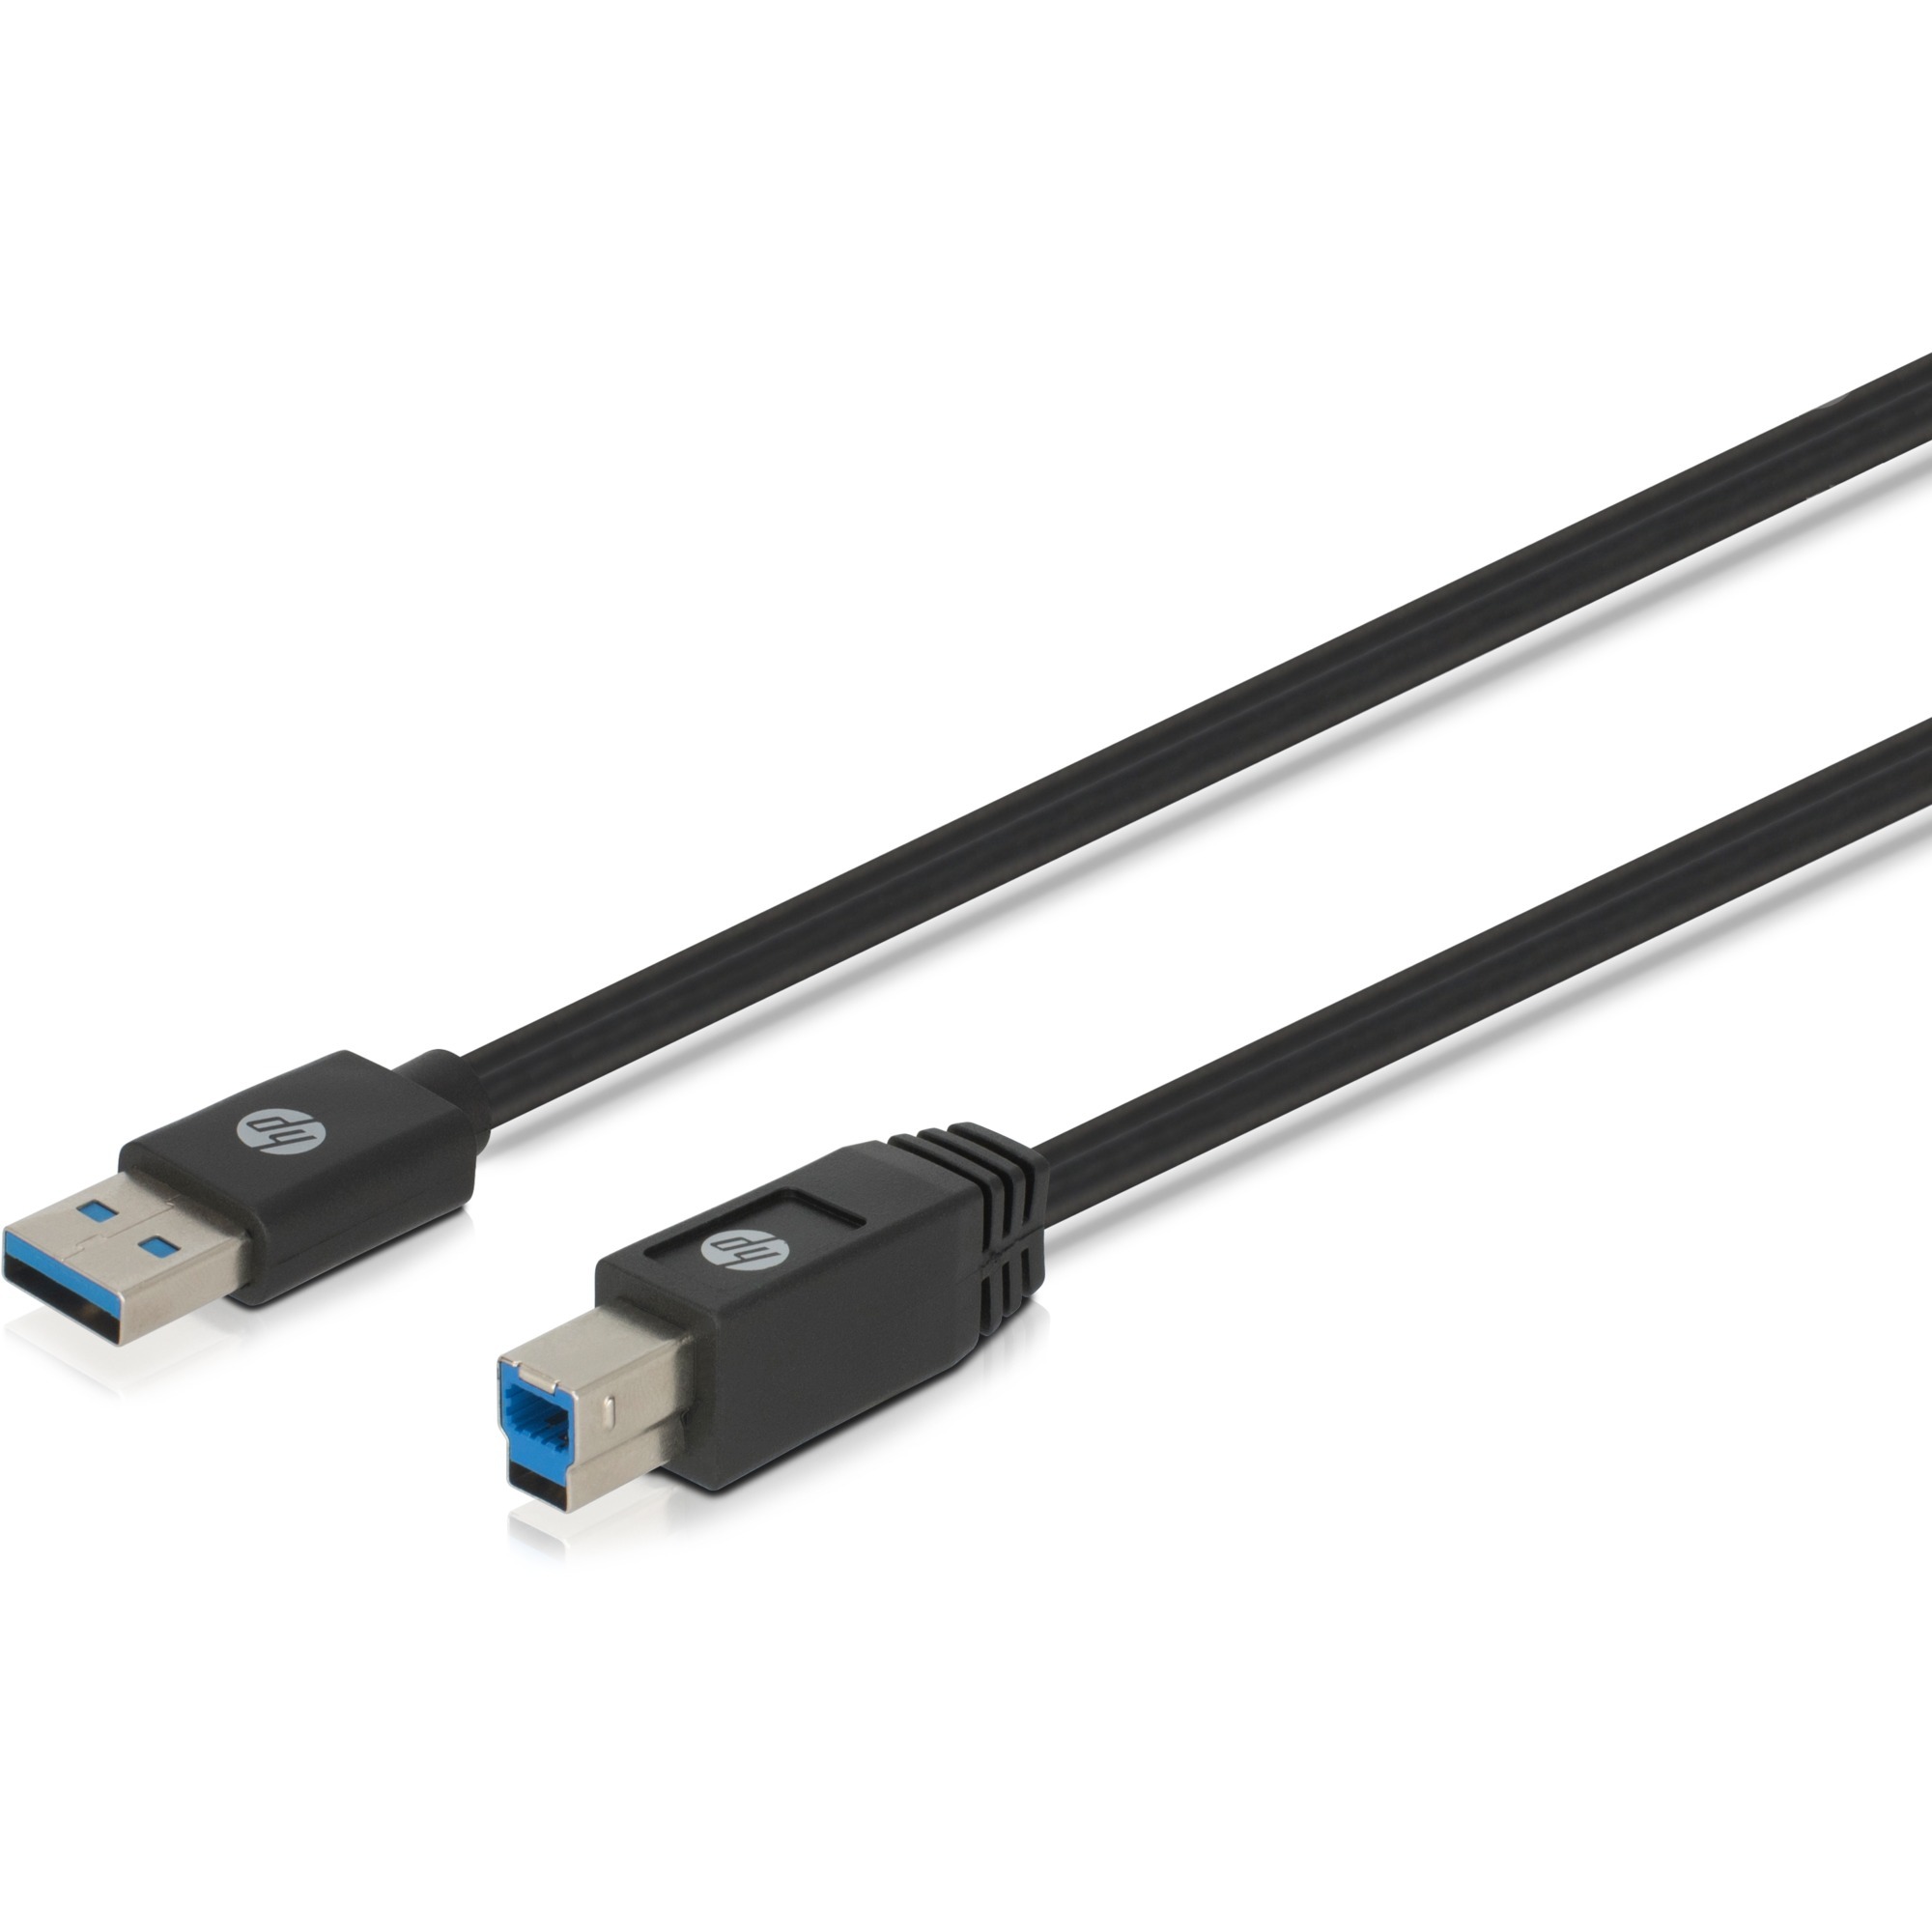 Image of Alternate - Kabel USB A 3.0 (Stecker) > USB B 3.0 (Stecker) online einkaufen bei Alternate